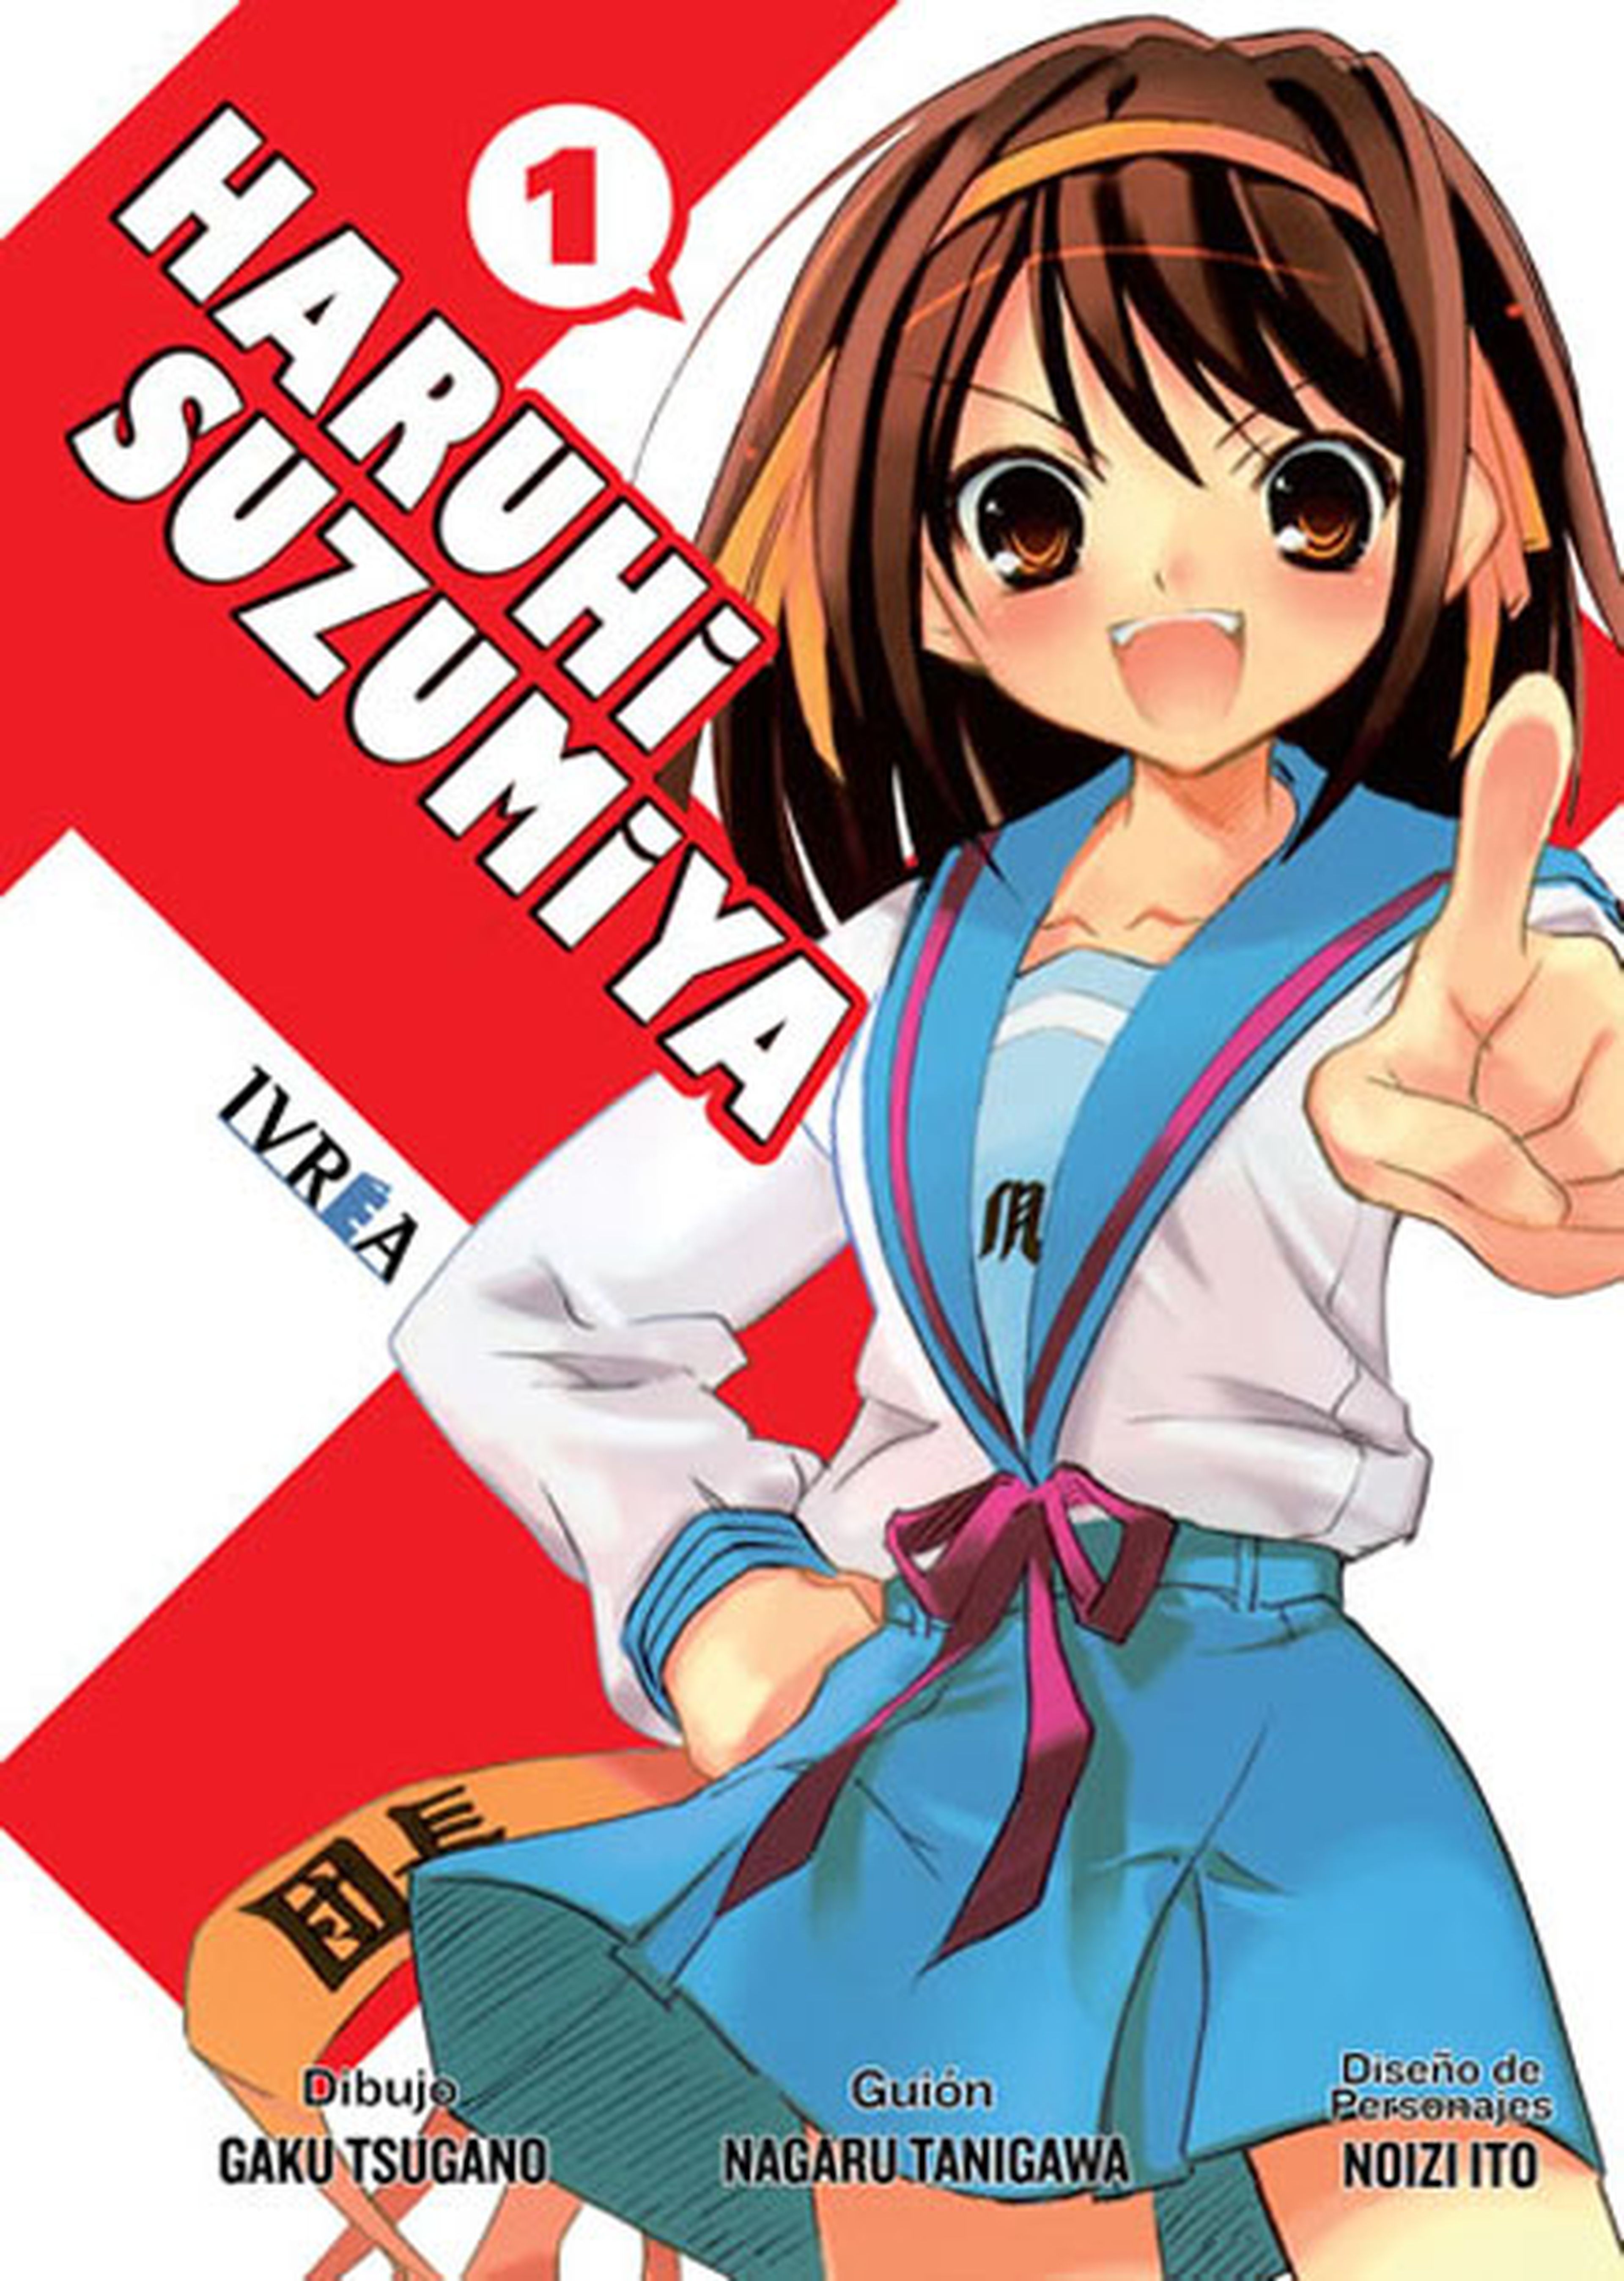 Acaba el manga de Haruhi Suzumiya